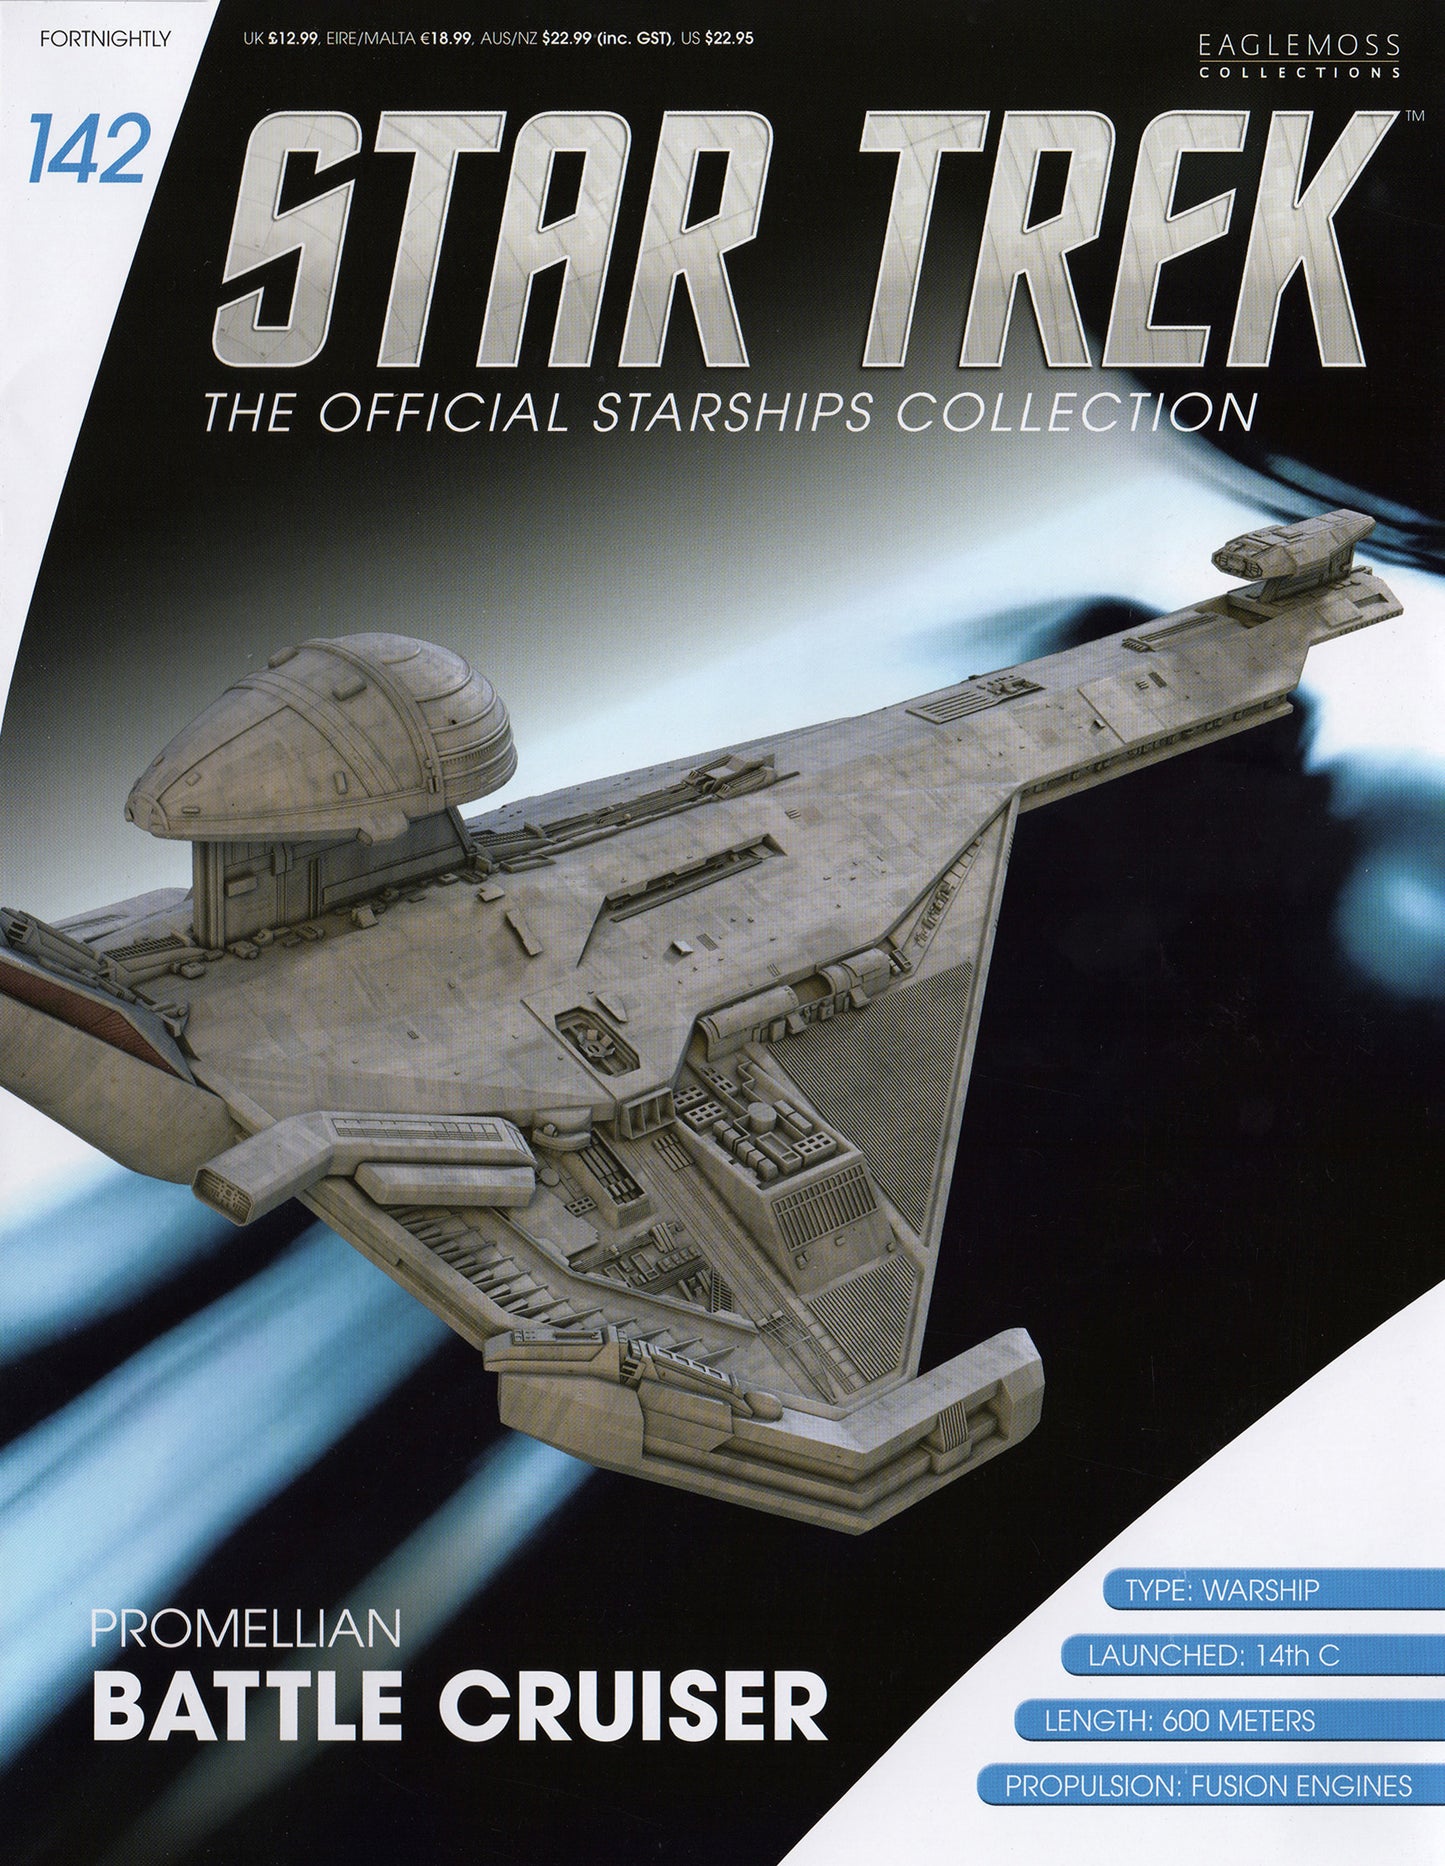 #142 Promellian Battle Cruiser Model Die Cast Ship (Eaglemoss / Star Trek)